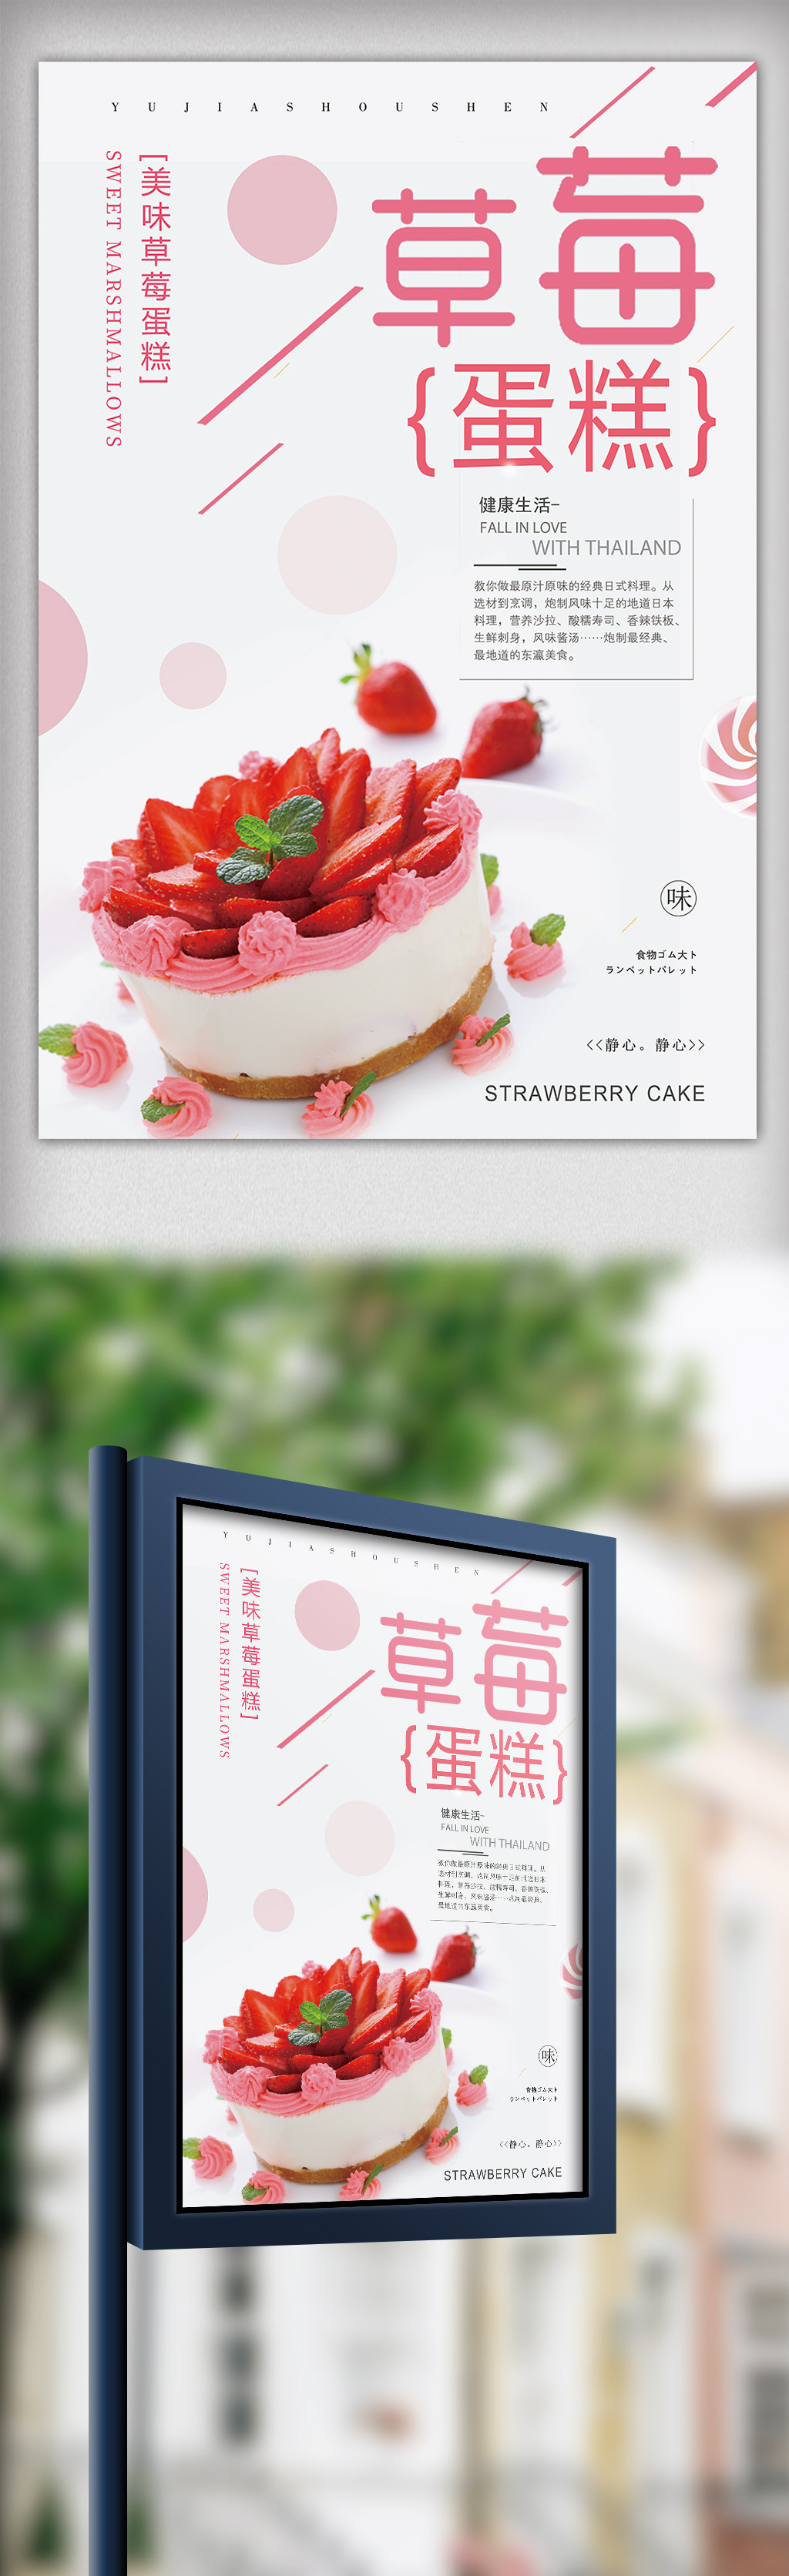 2018年粉色简洁大气草莓蛋糕甜品海报图片